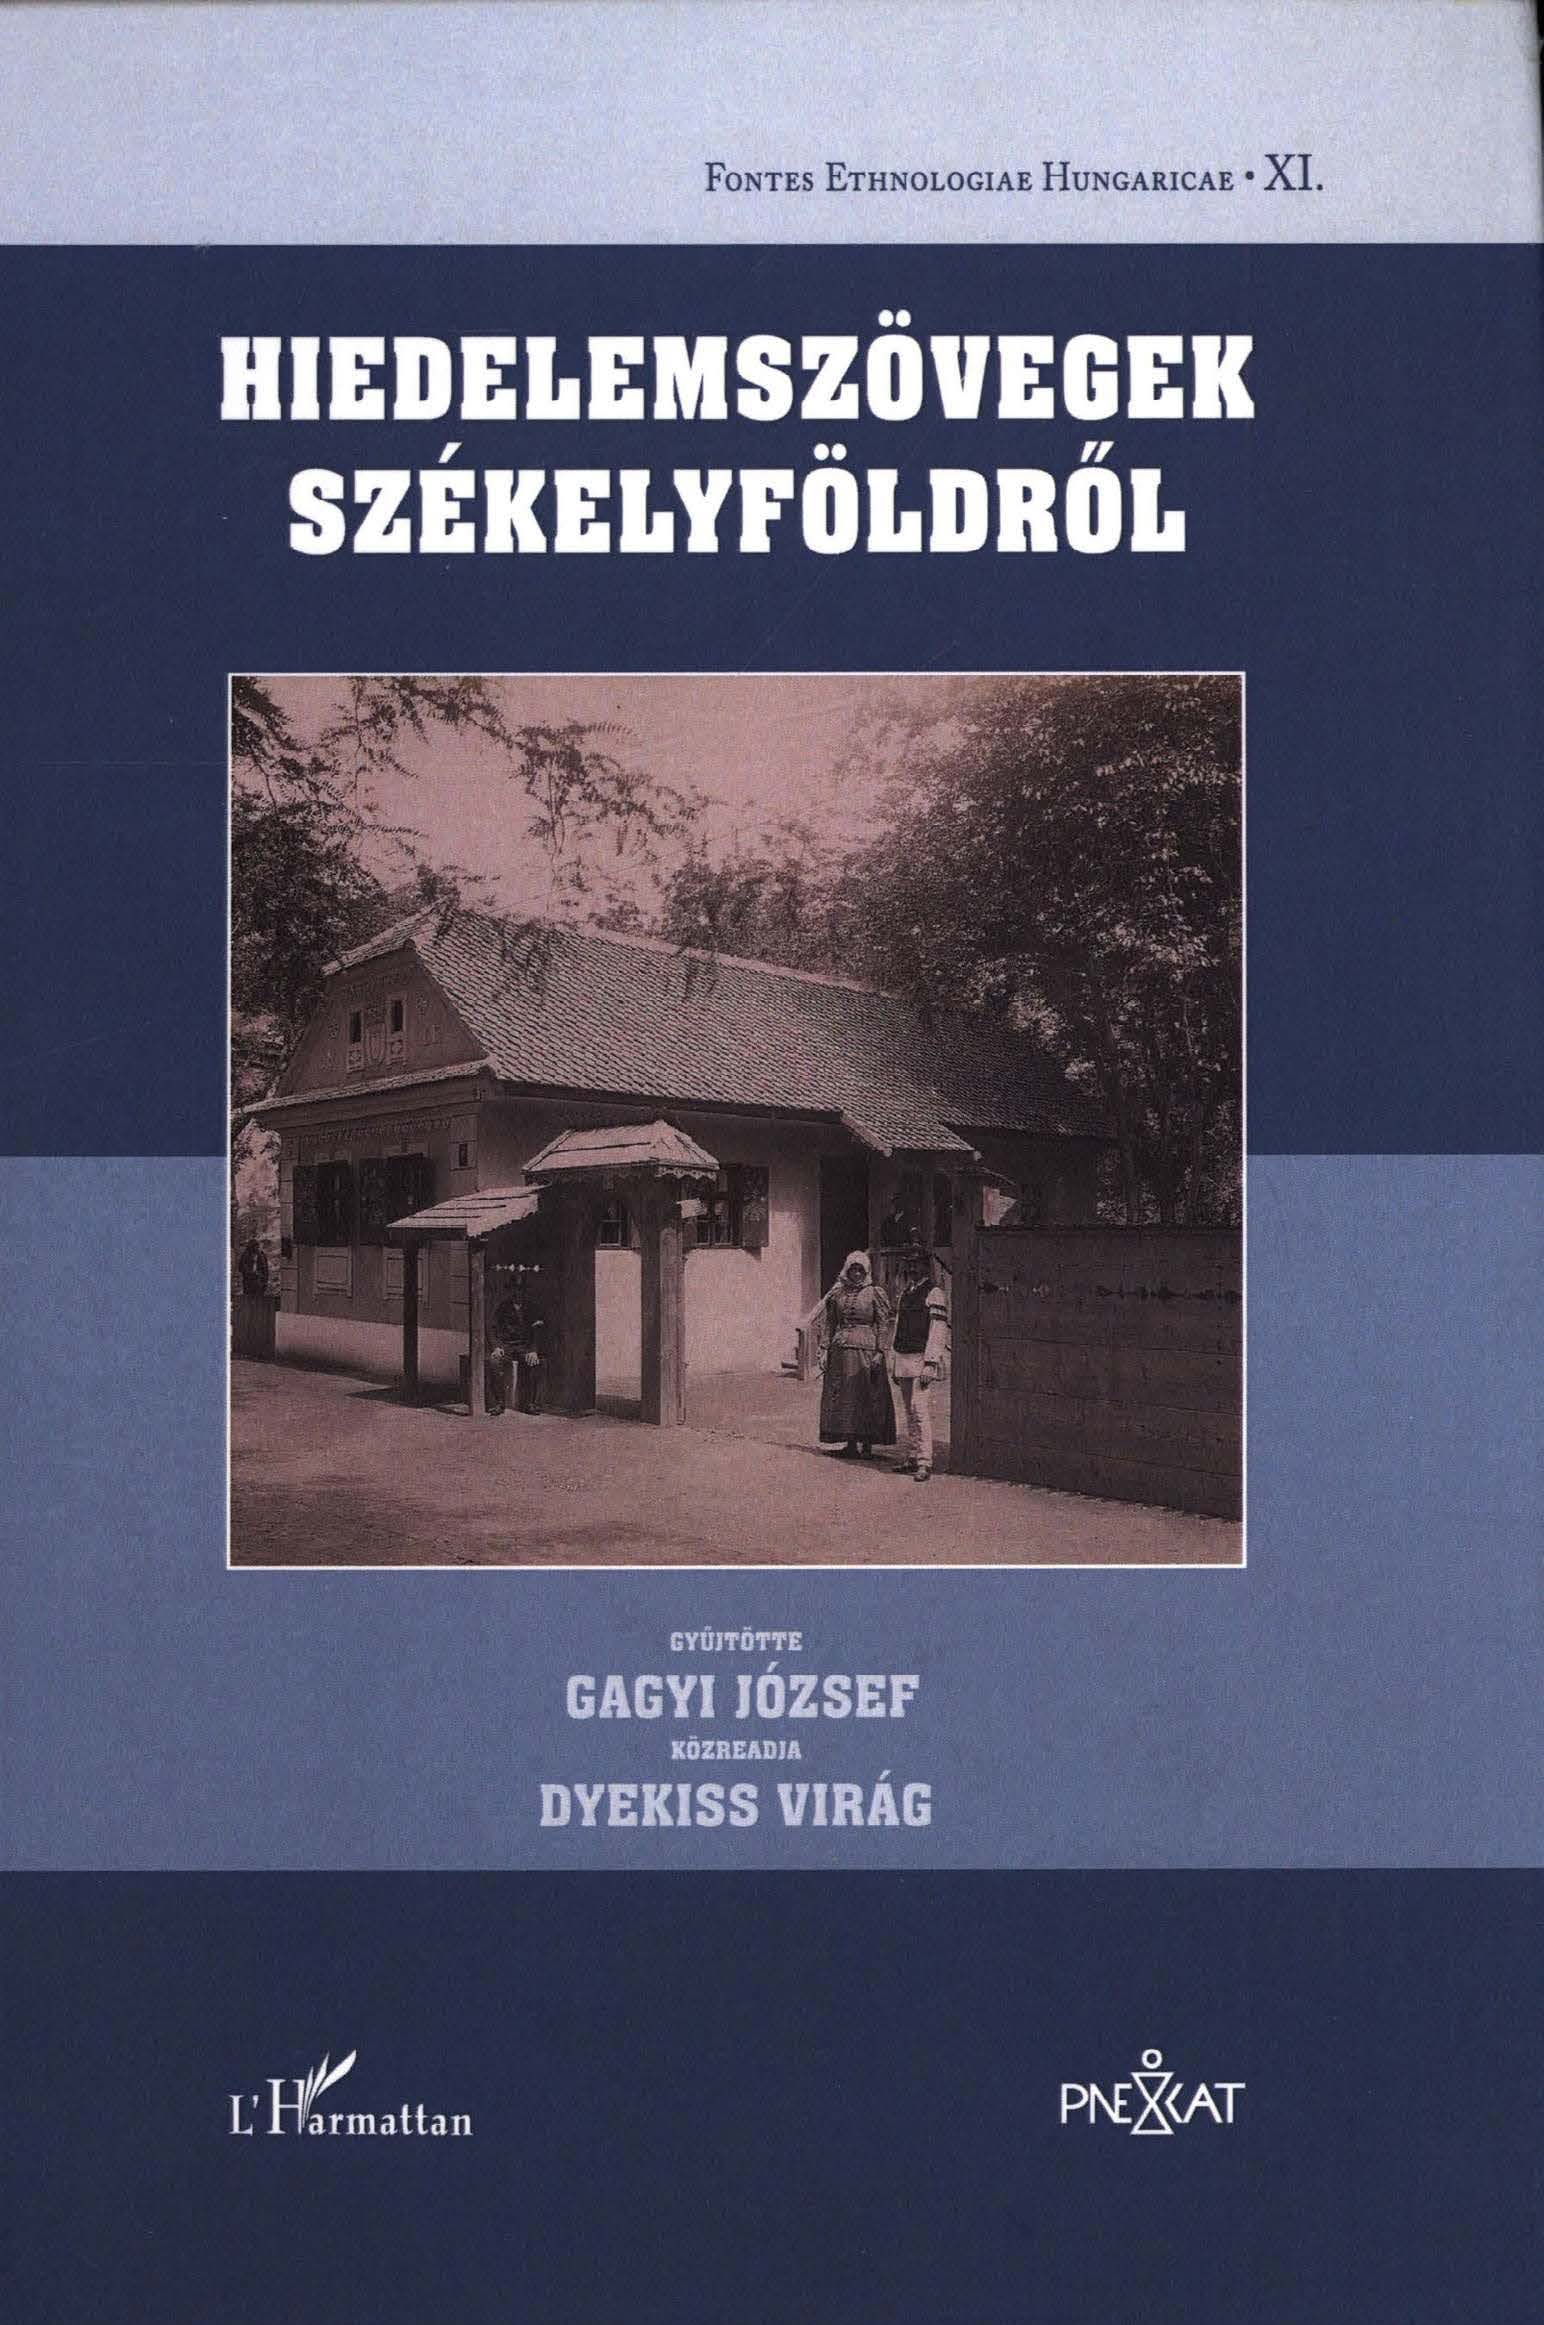 GAGYI J. DYEKISS V. kzr. Hiedelemszvegek Szkelyfldrl FONT XI cover